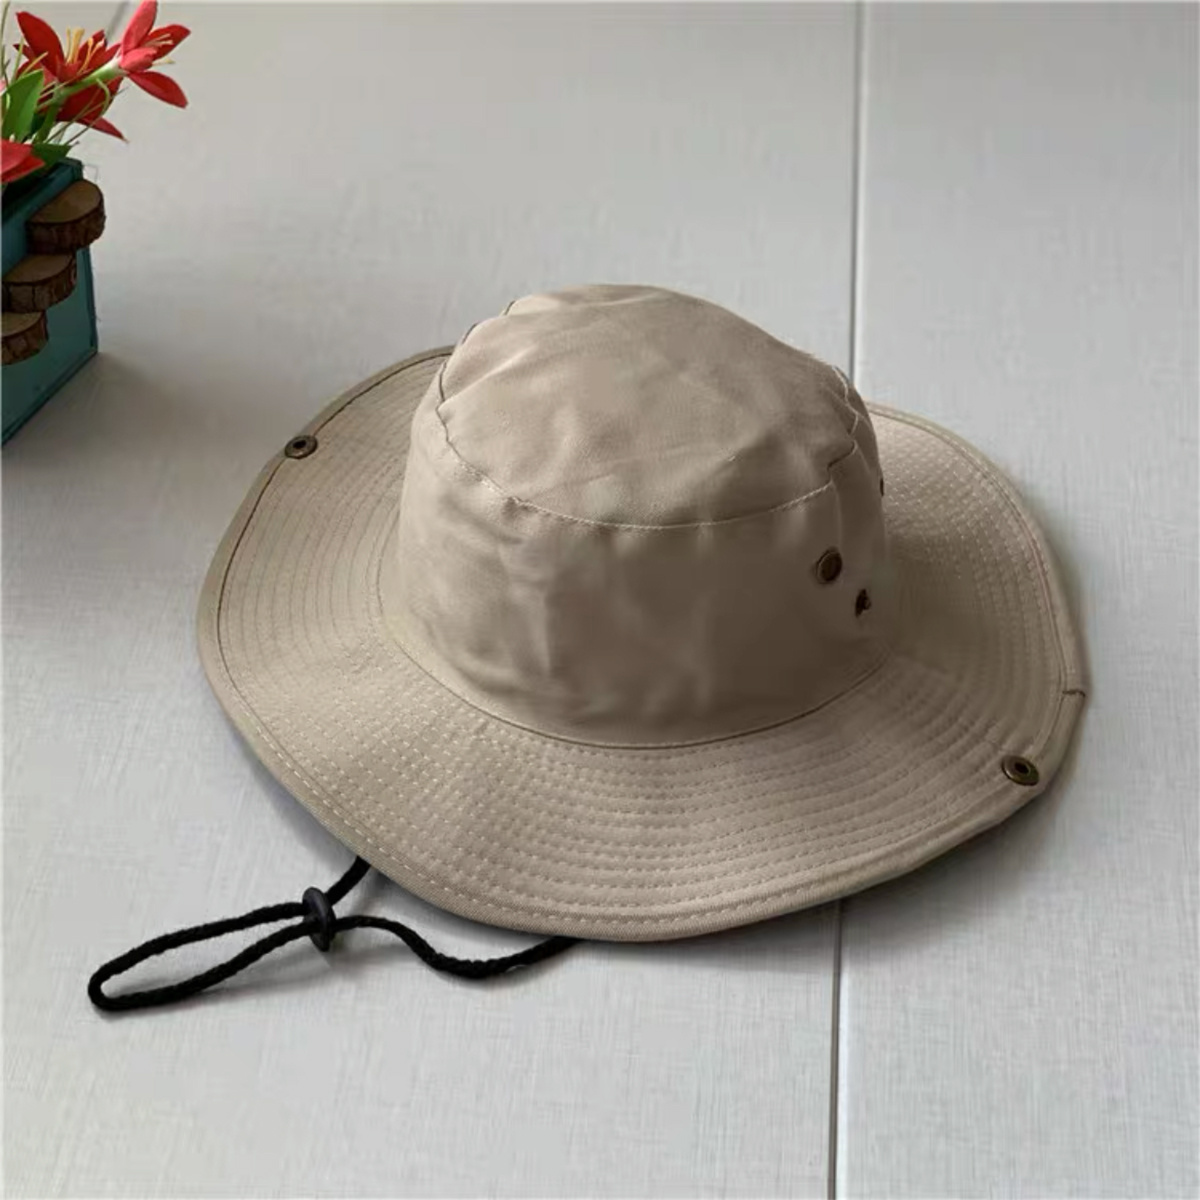 Bucket Sun Hat Floppy Cotton Hats Wide Brim Summer Beach Fishermans, Don't  Miss These Great Deals